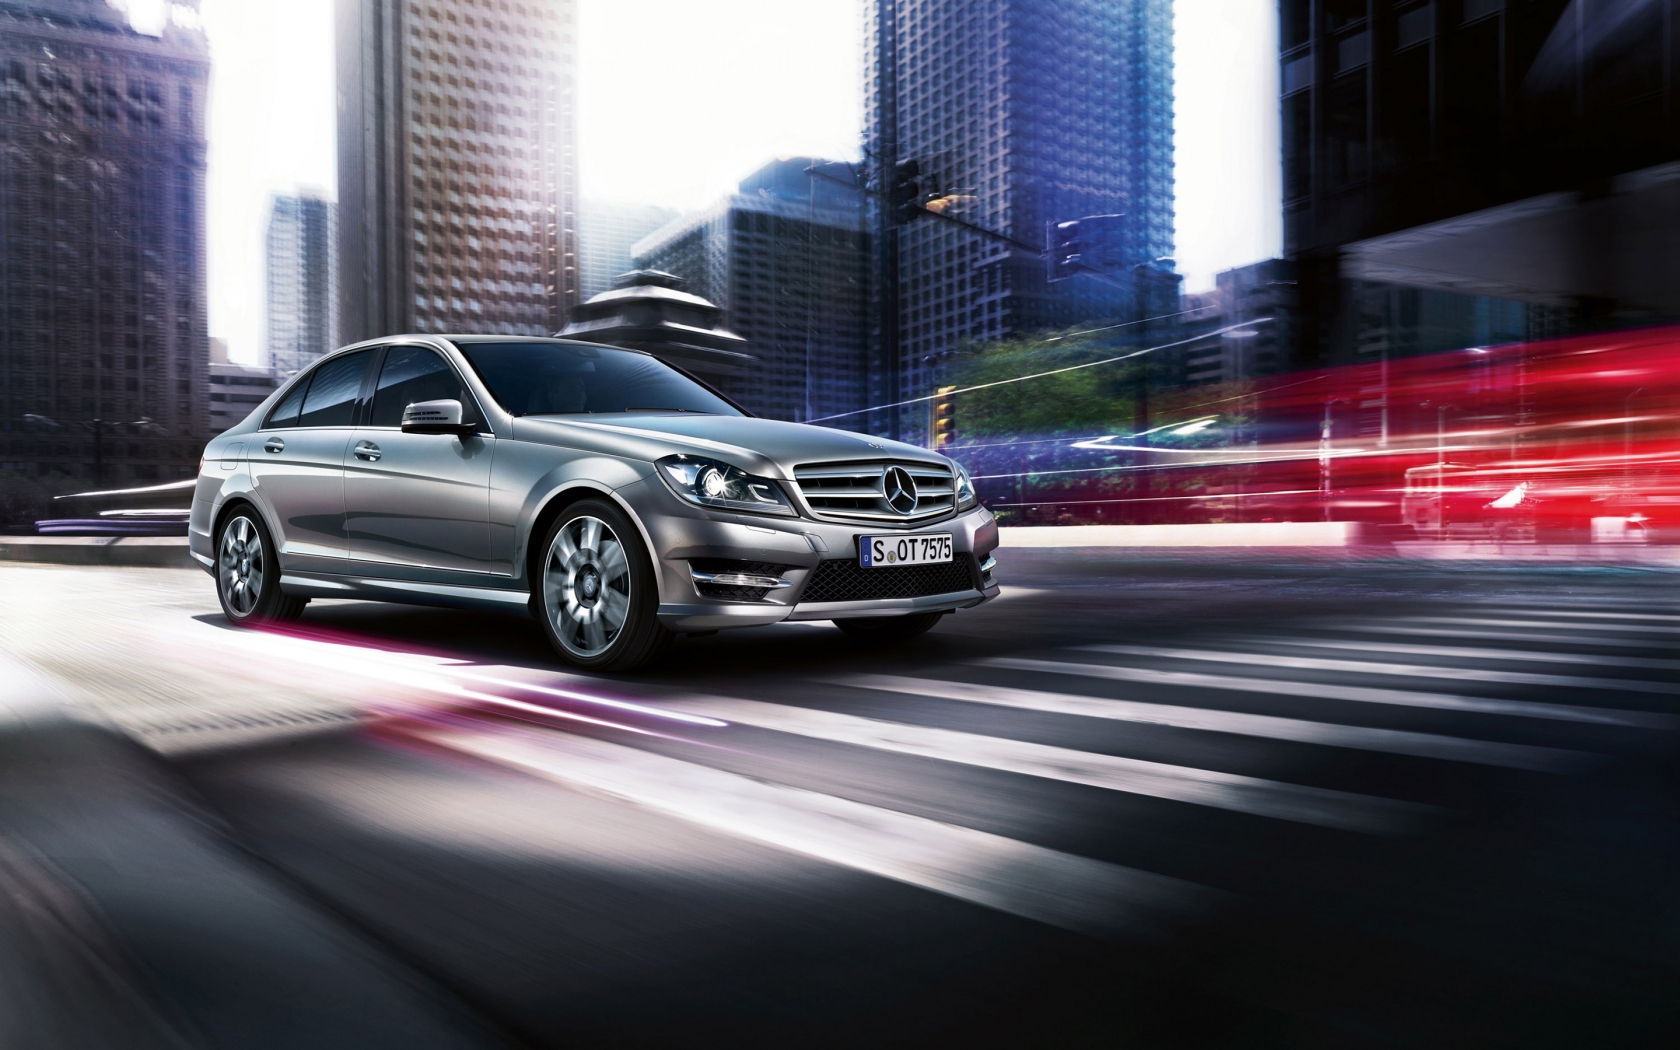 2013 Mercedes-Benz C Class for 1680 x 1050 widescreen resolution